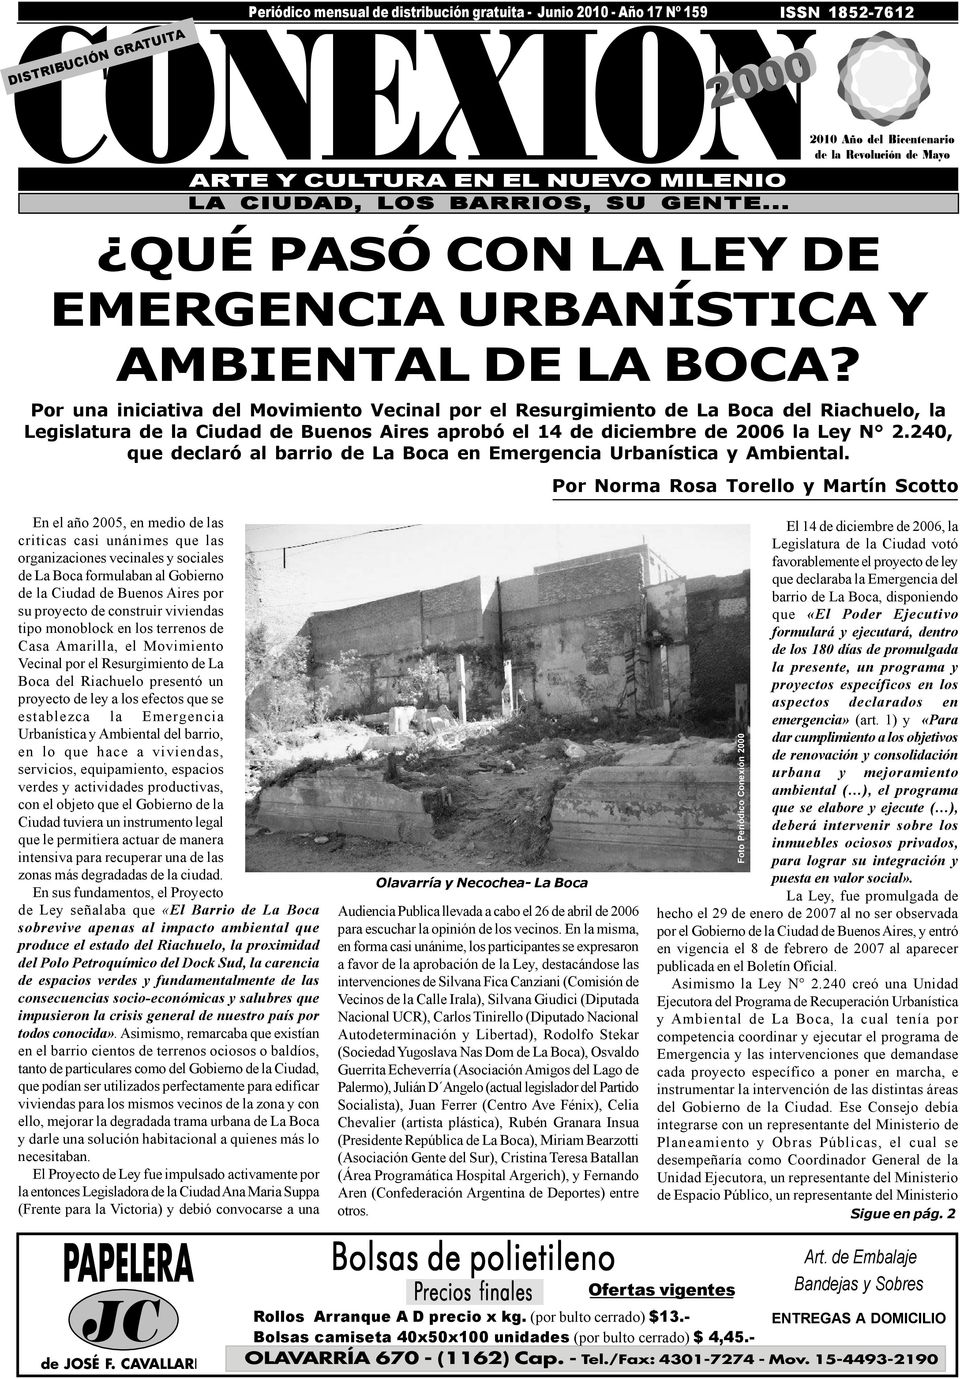 En el año 2005, en medio de las criticas casi unánimes que las organizaciones vecinales y sociales de La Boca formulaban al Gobierno de la Ciudad de Buenos Aires por su proyecto de construir